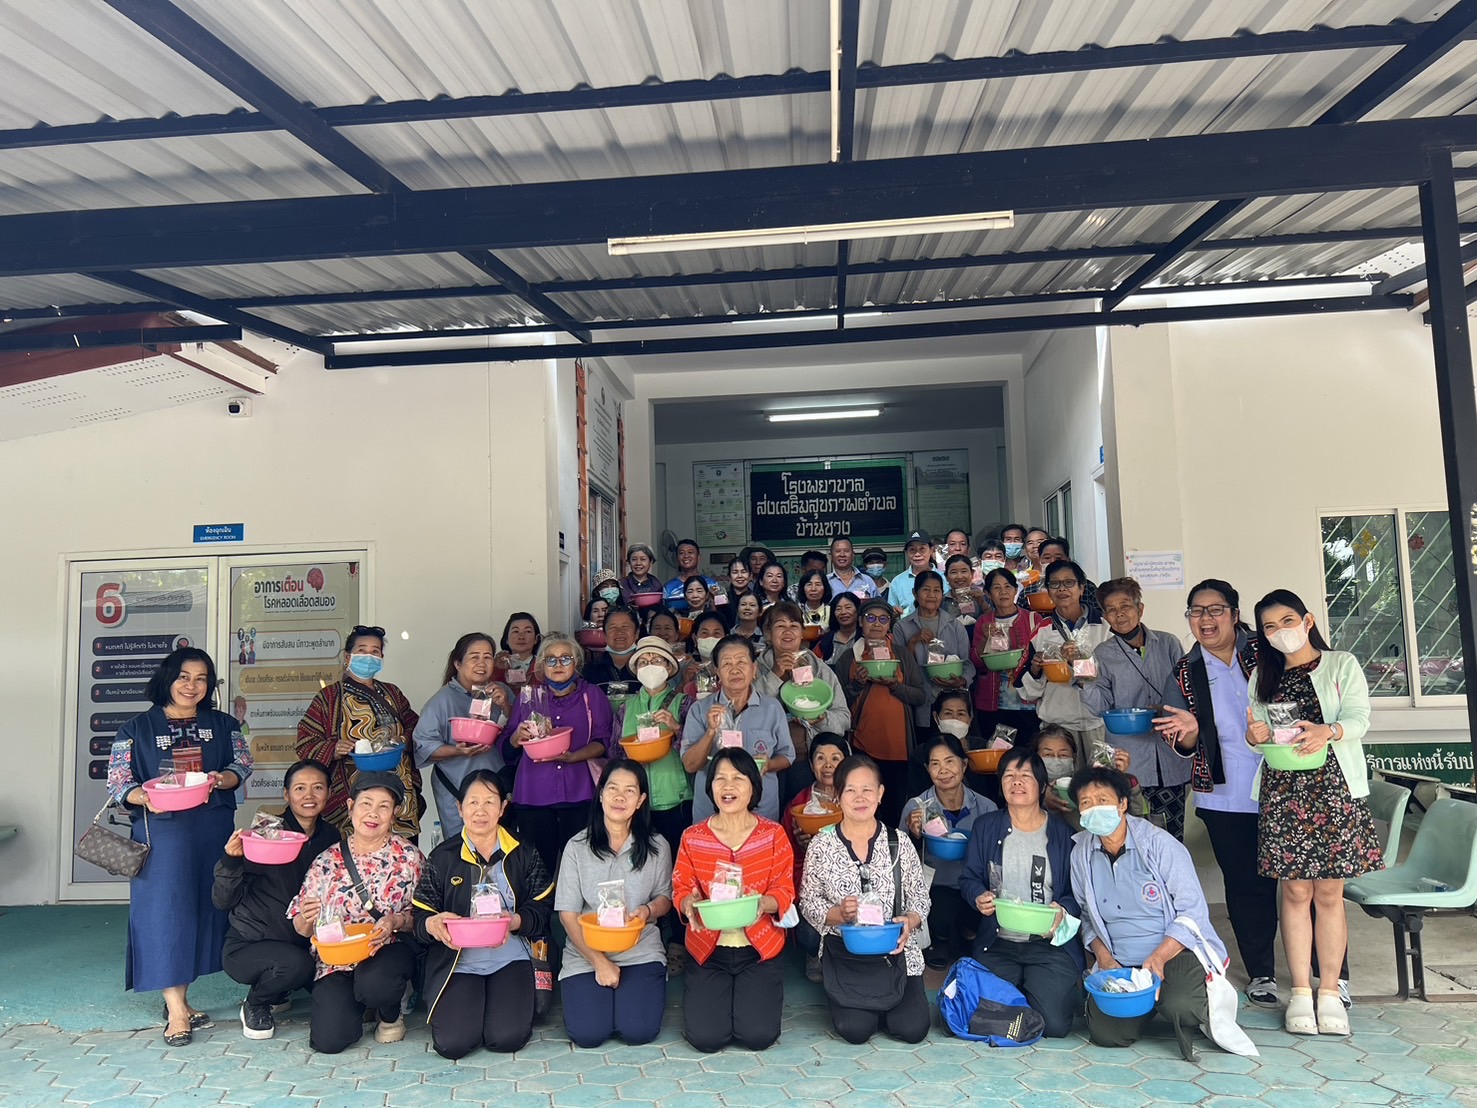 รพ.สต.บ้านซาง อำเภอแม่ริม จัดโครงการแก้ไขปัญหาโรคทางเดินหายใจจาก PM2.5 โดยใช้ศาสตร์แพทย์แผนไทย